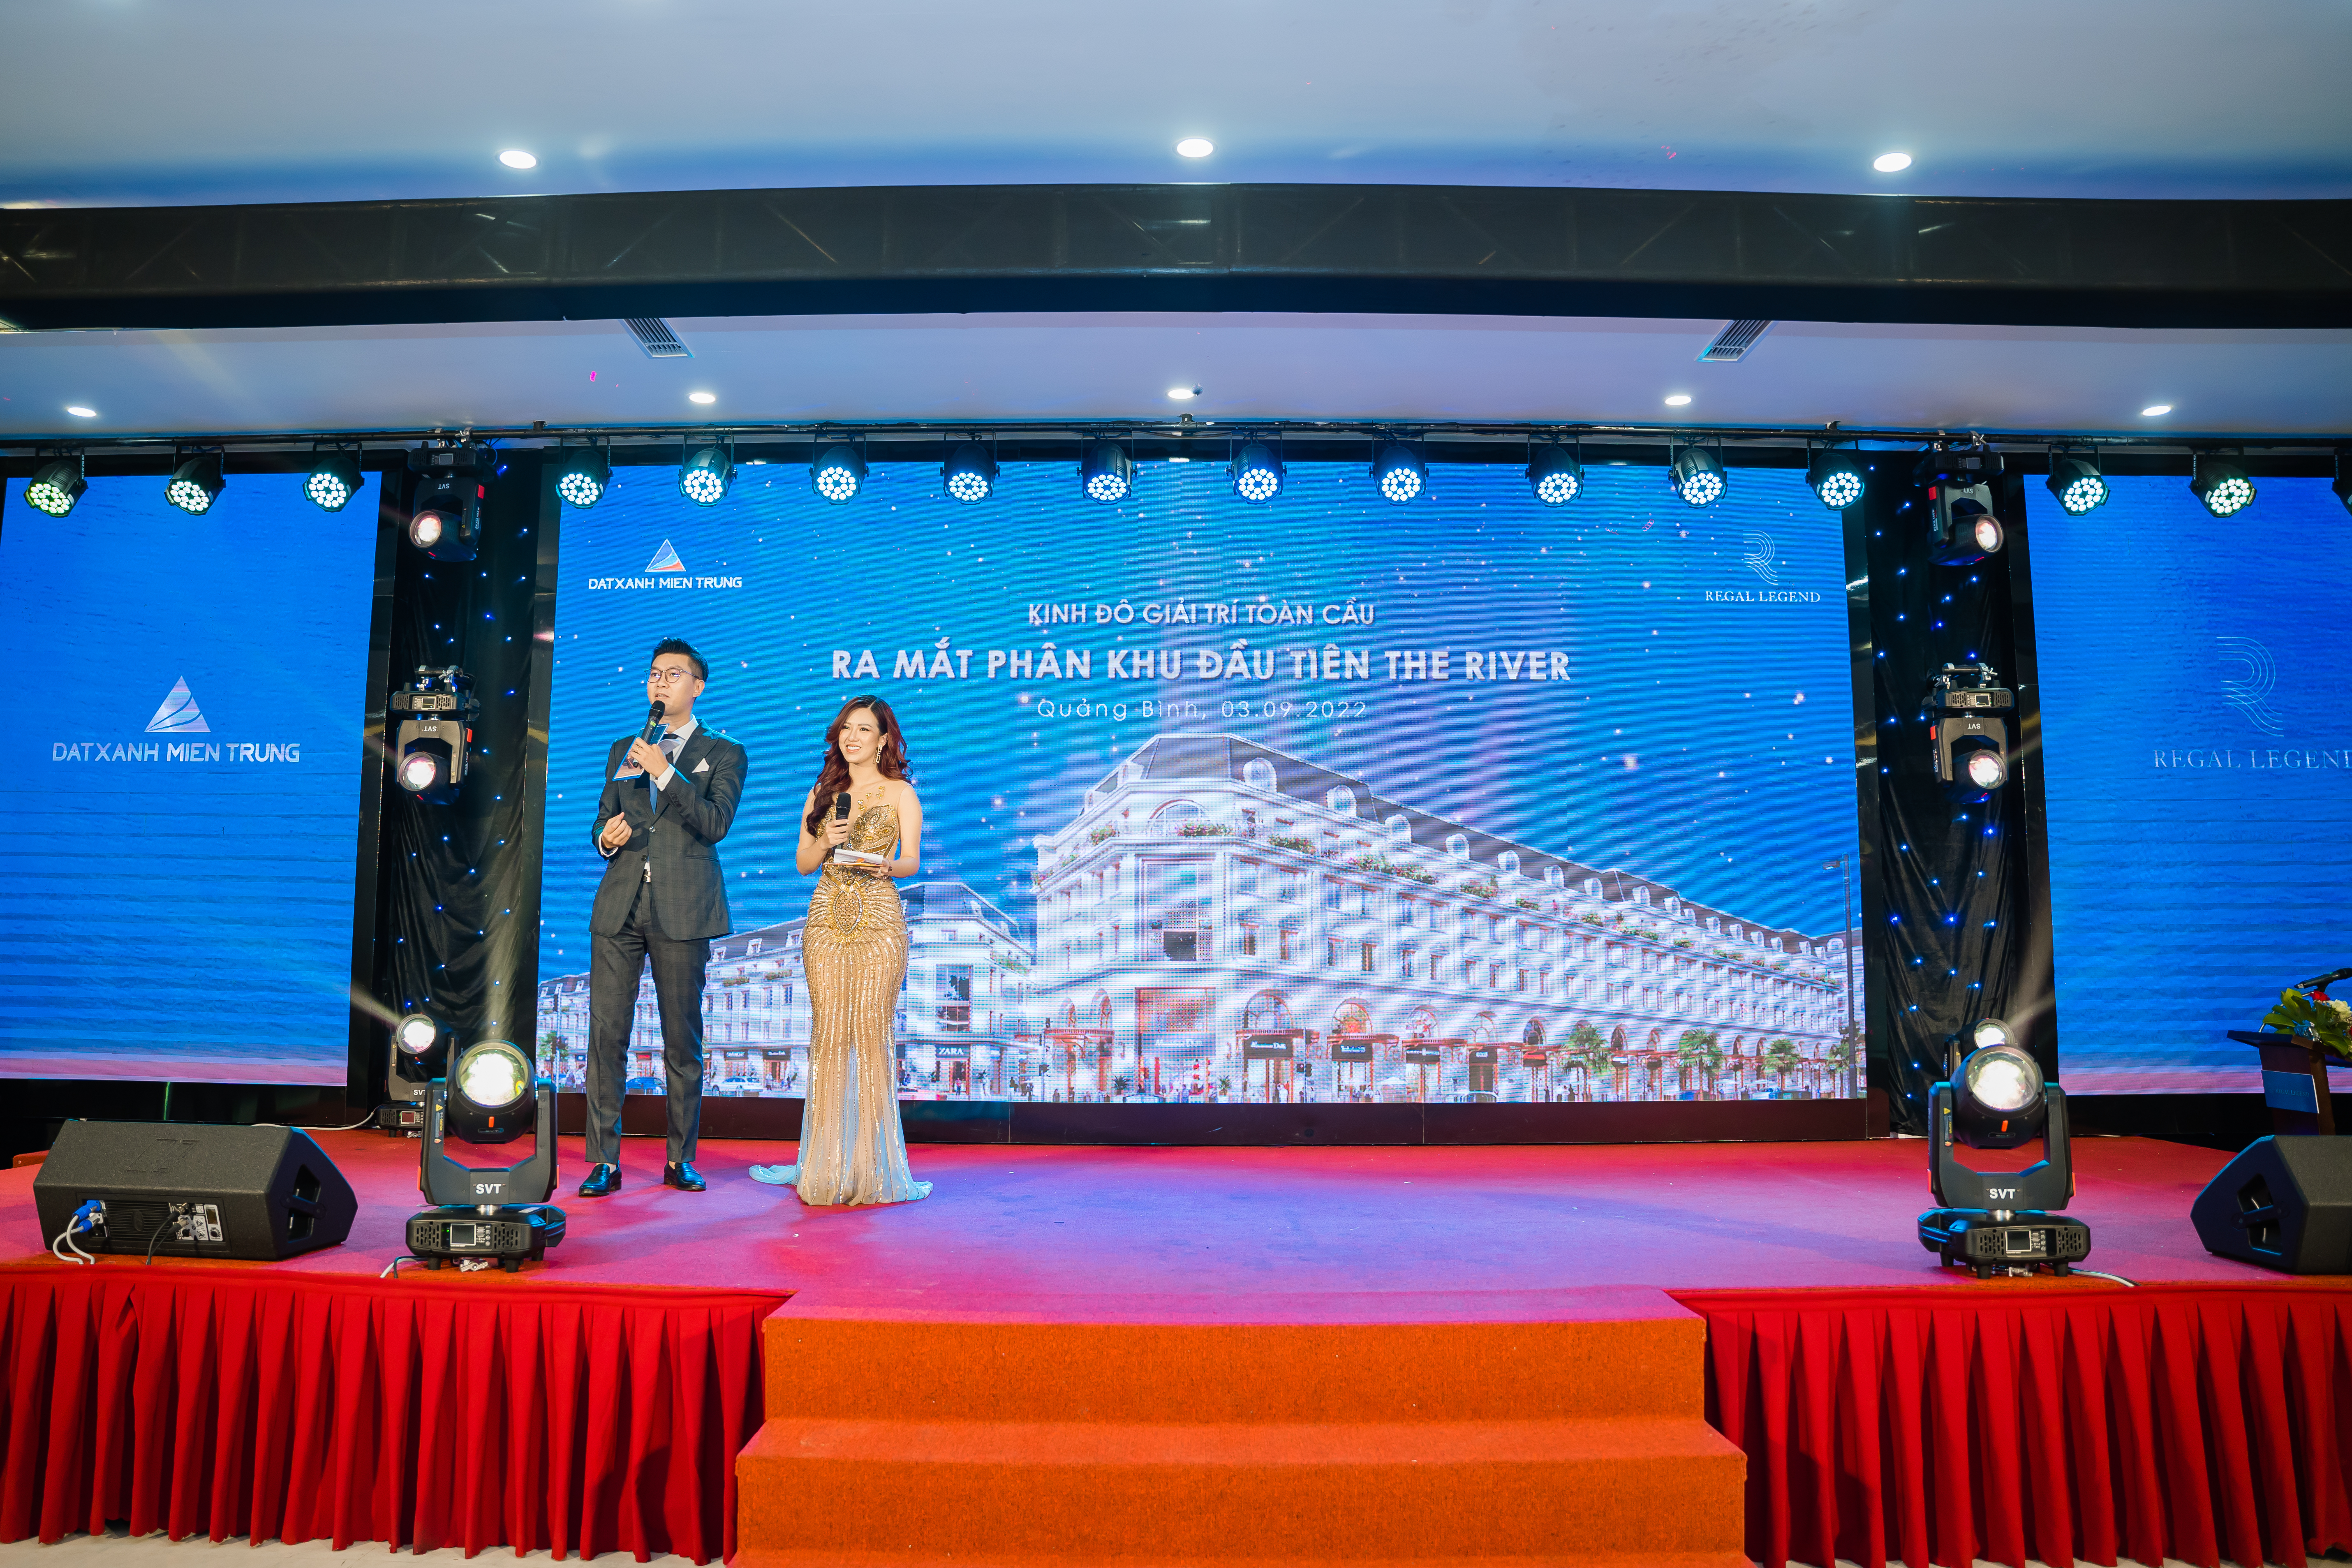 100 căn boutique hotels giá từ 16 tỷ đồng tại Regal Legend Quang Binh nhanh chóng cháy hàng - Ảnh 1